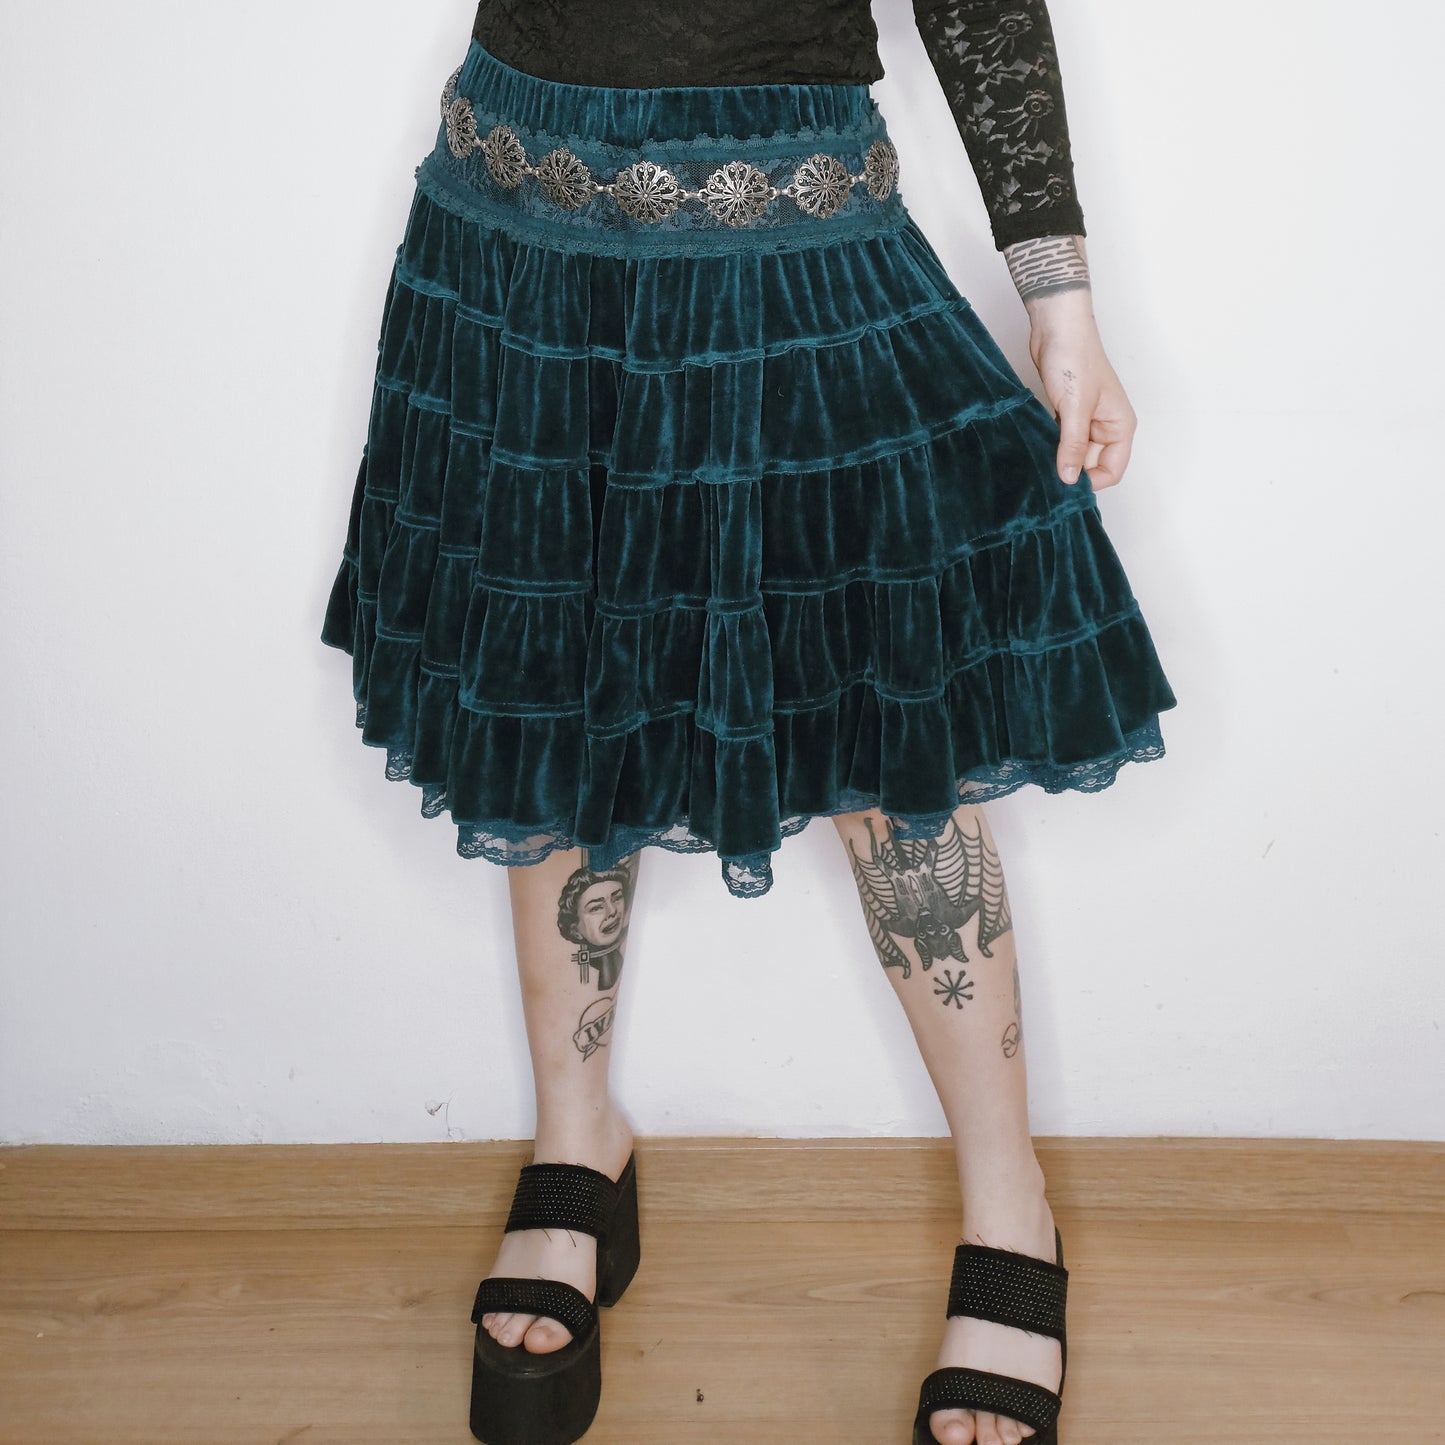 Velvet Teal Lace Skirt - S/M